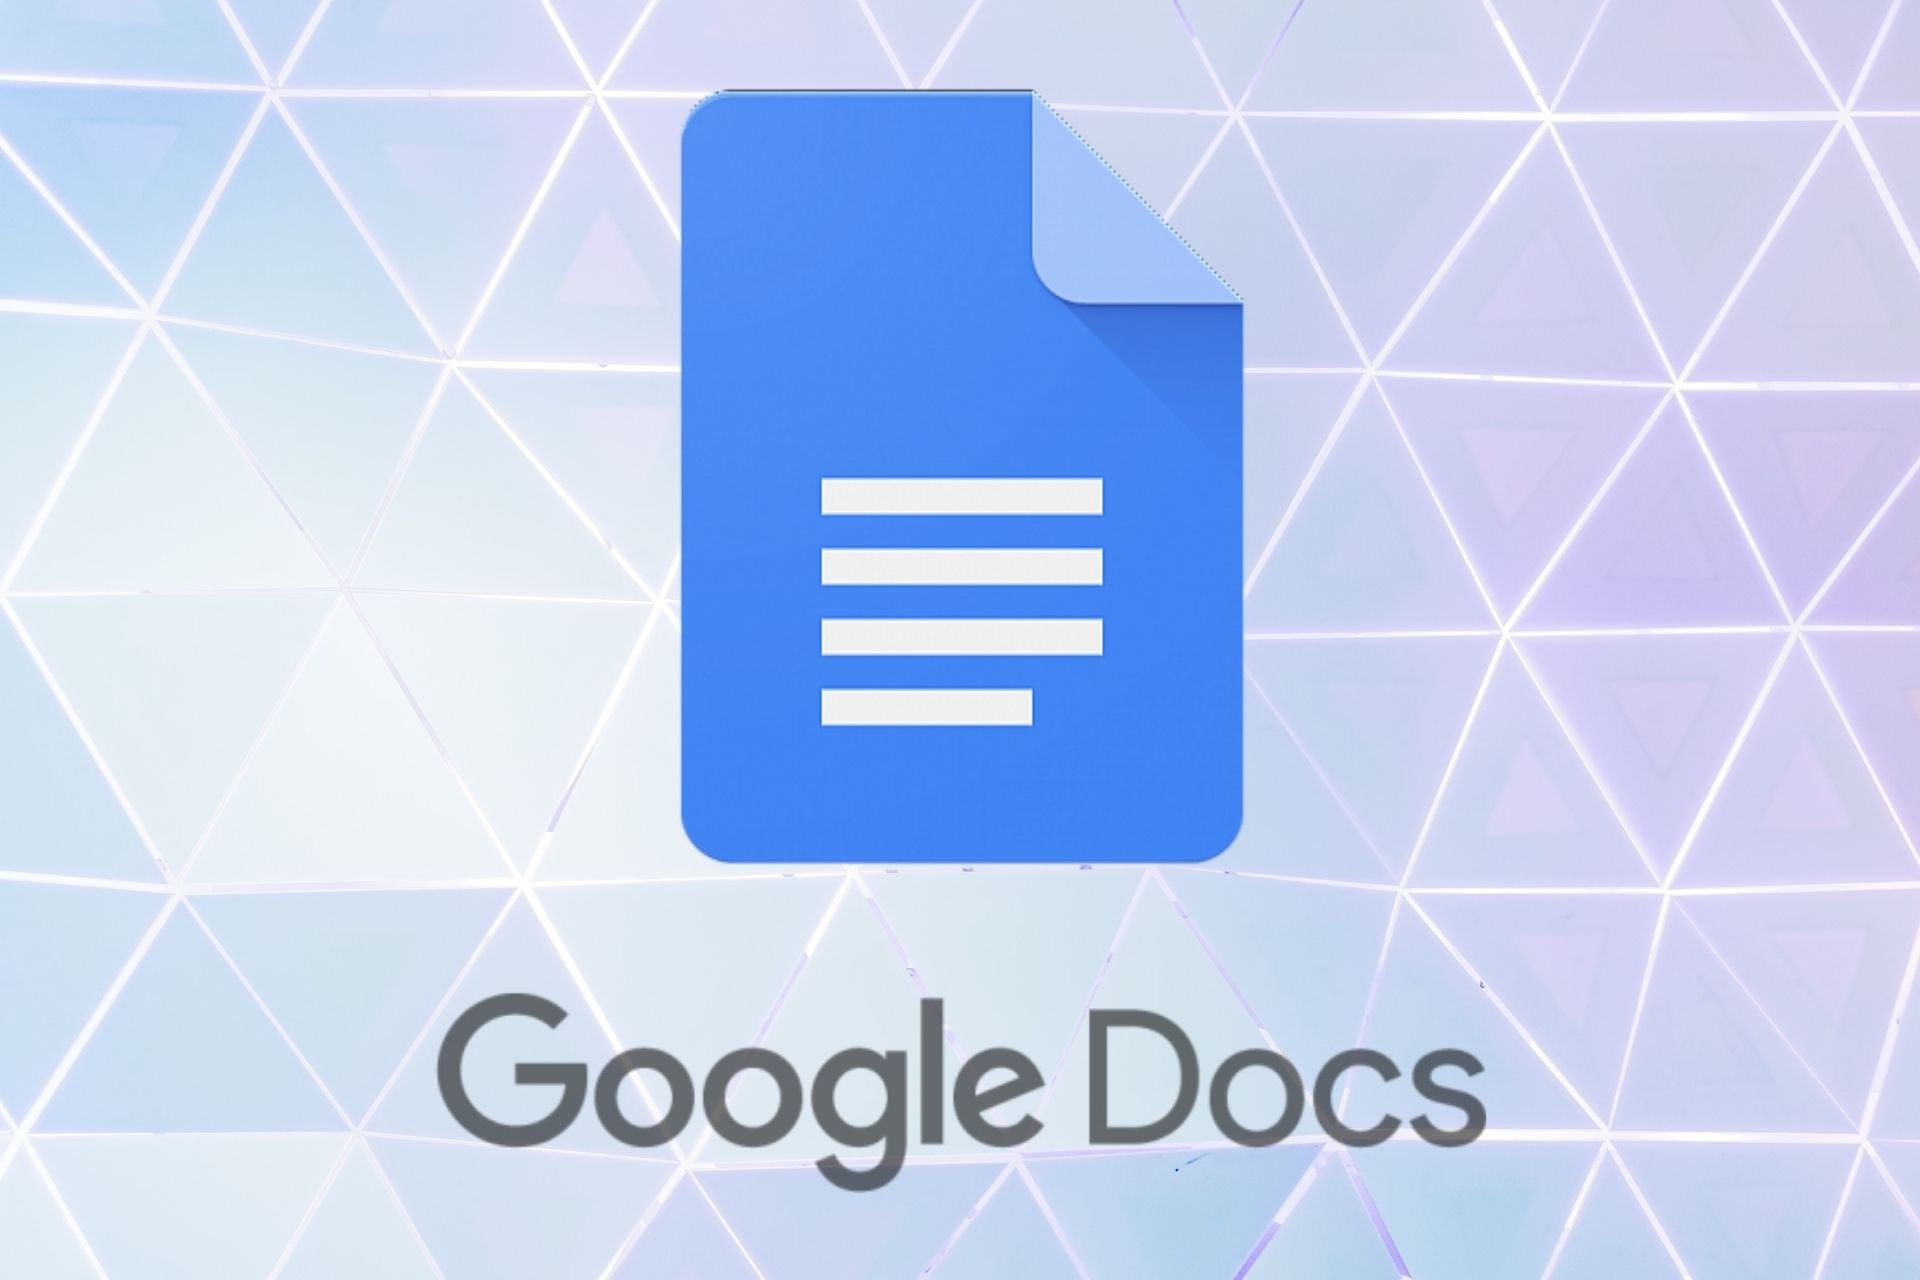 Cómo crear bordes impresionantes en Google Docs